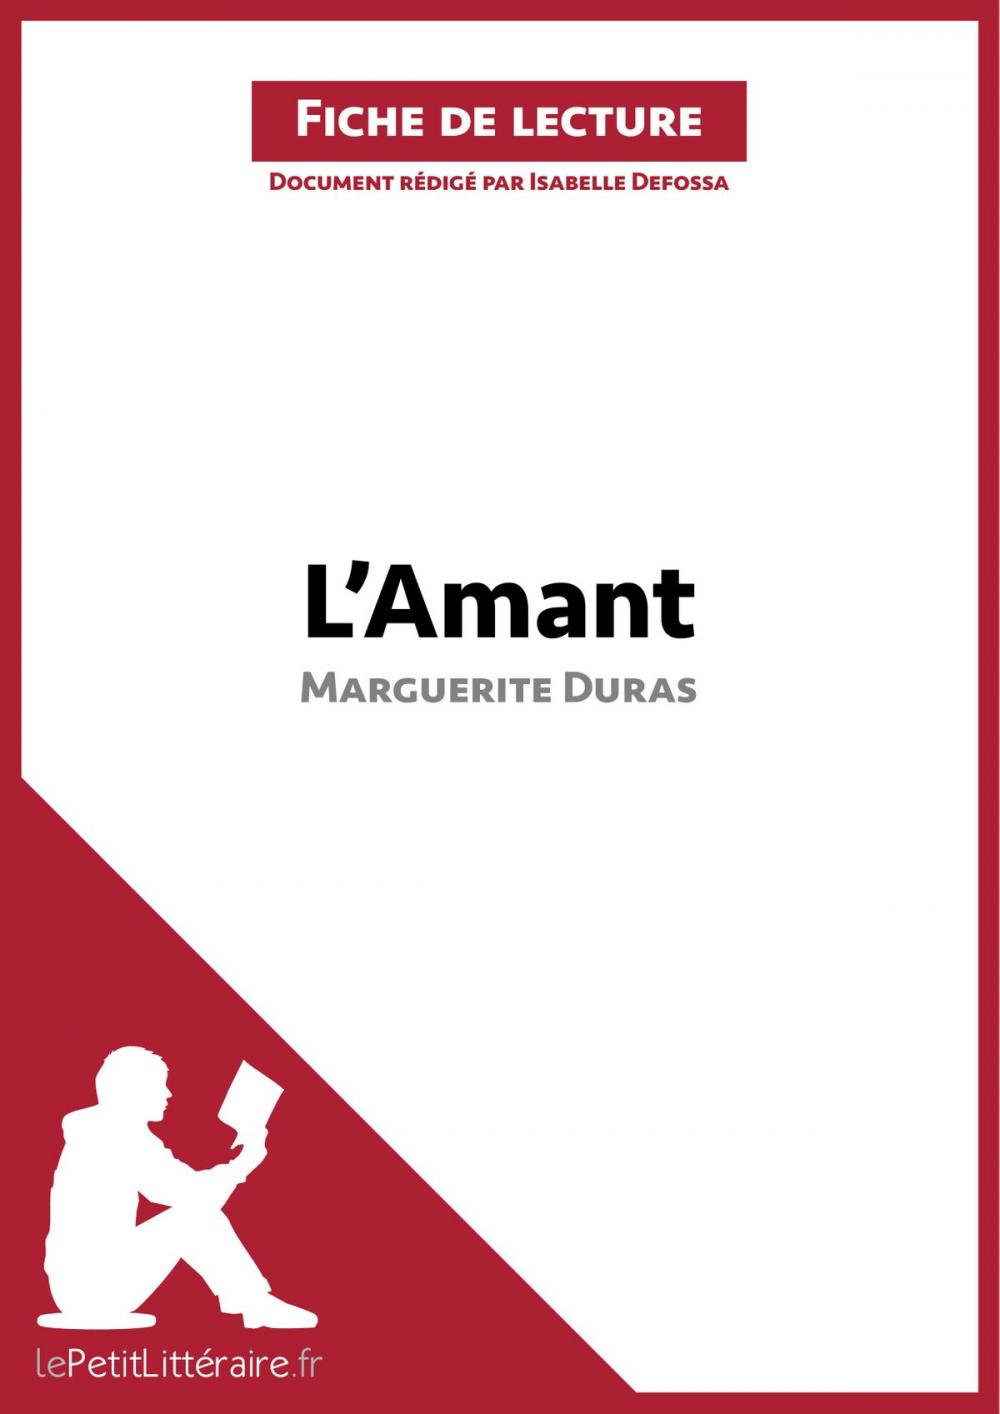 Big bigCover of L'Amant de Marguerite Duras (Fiche de lecture)